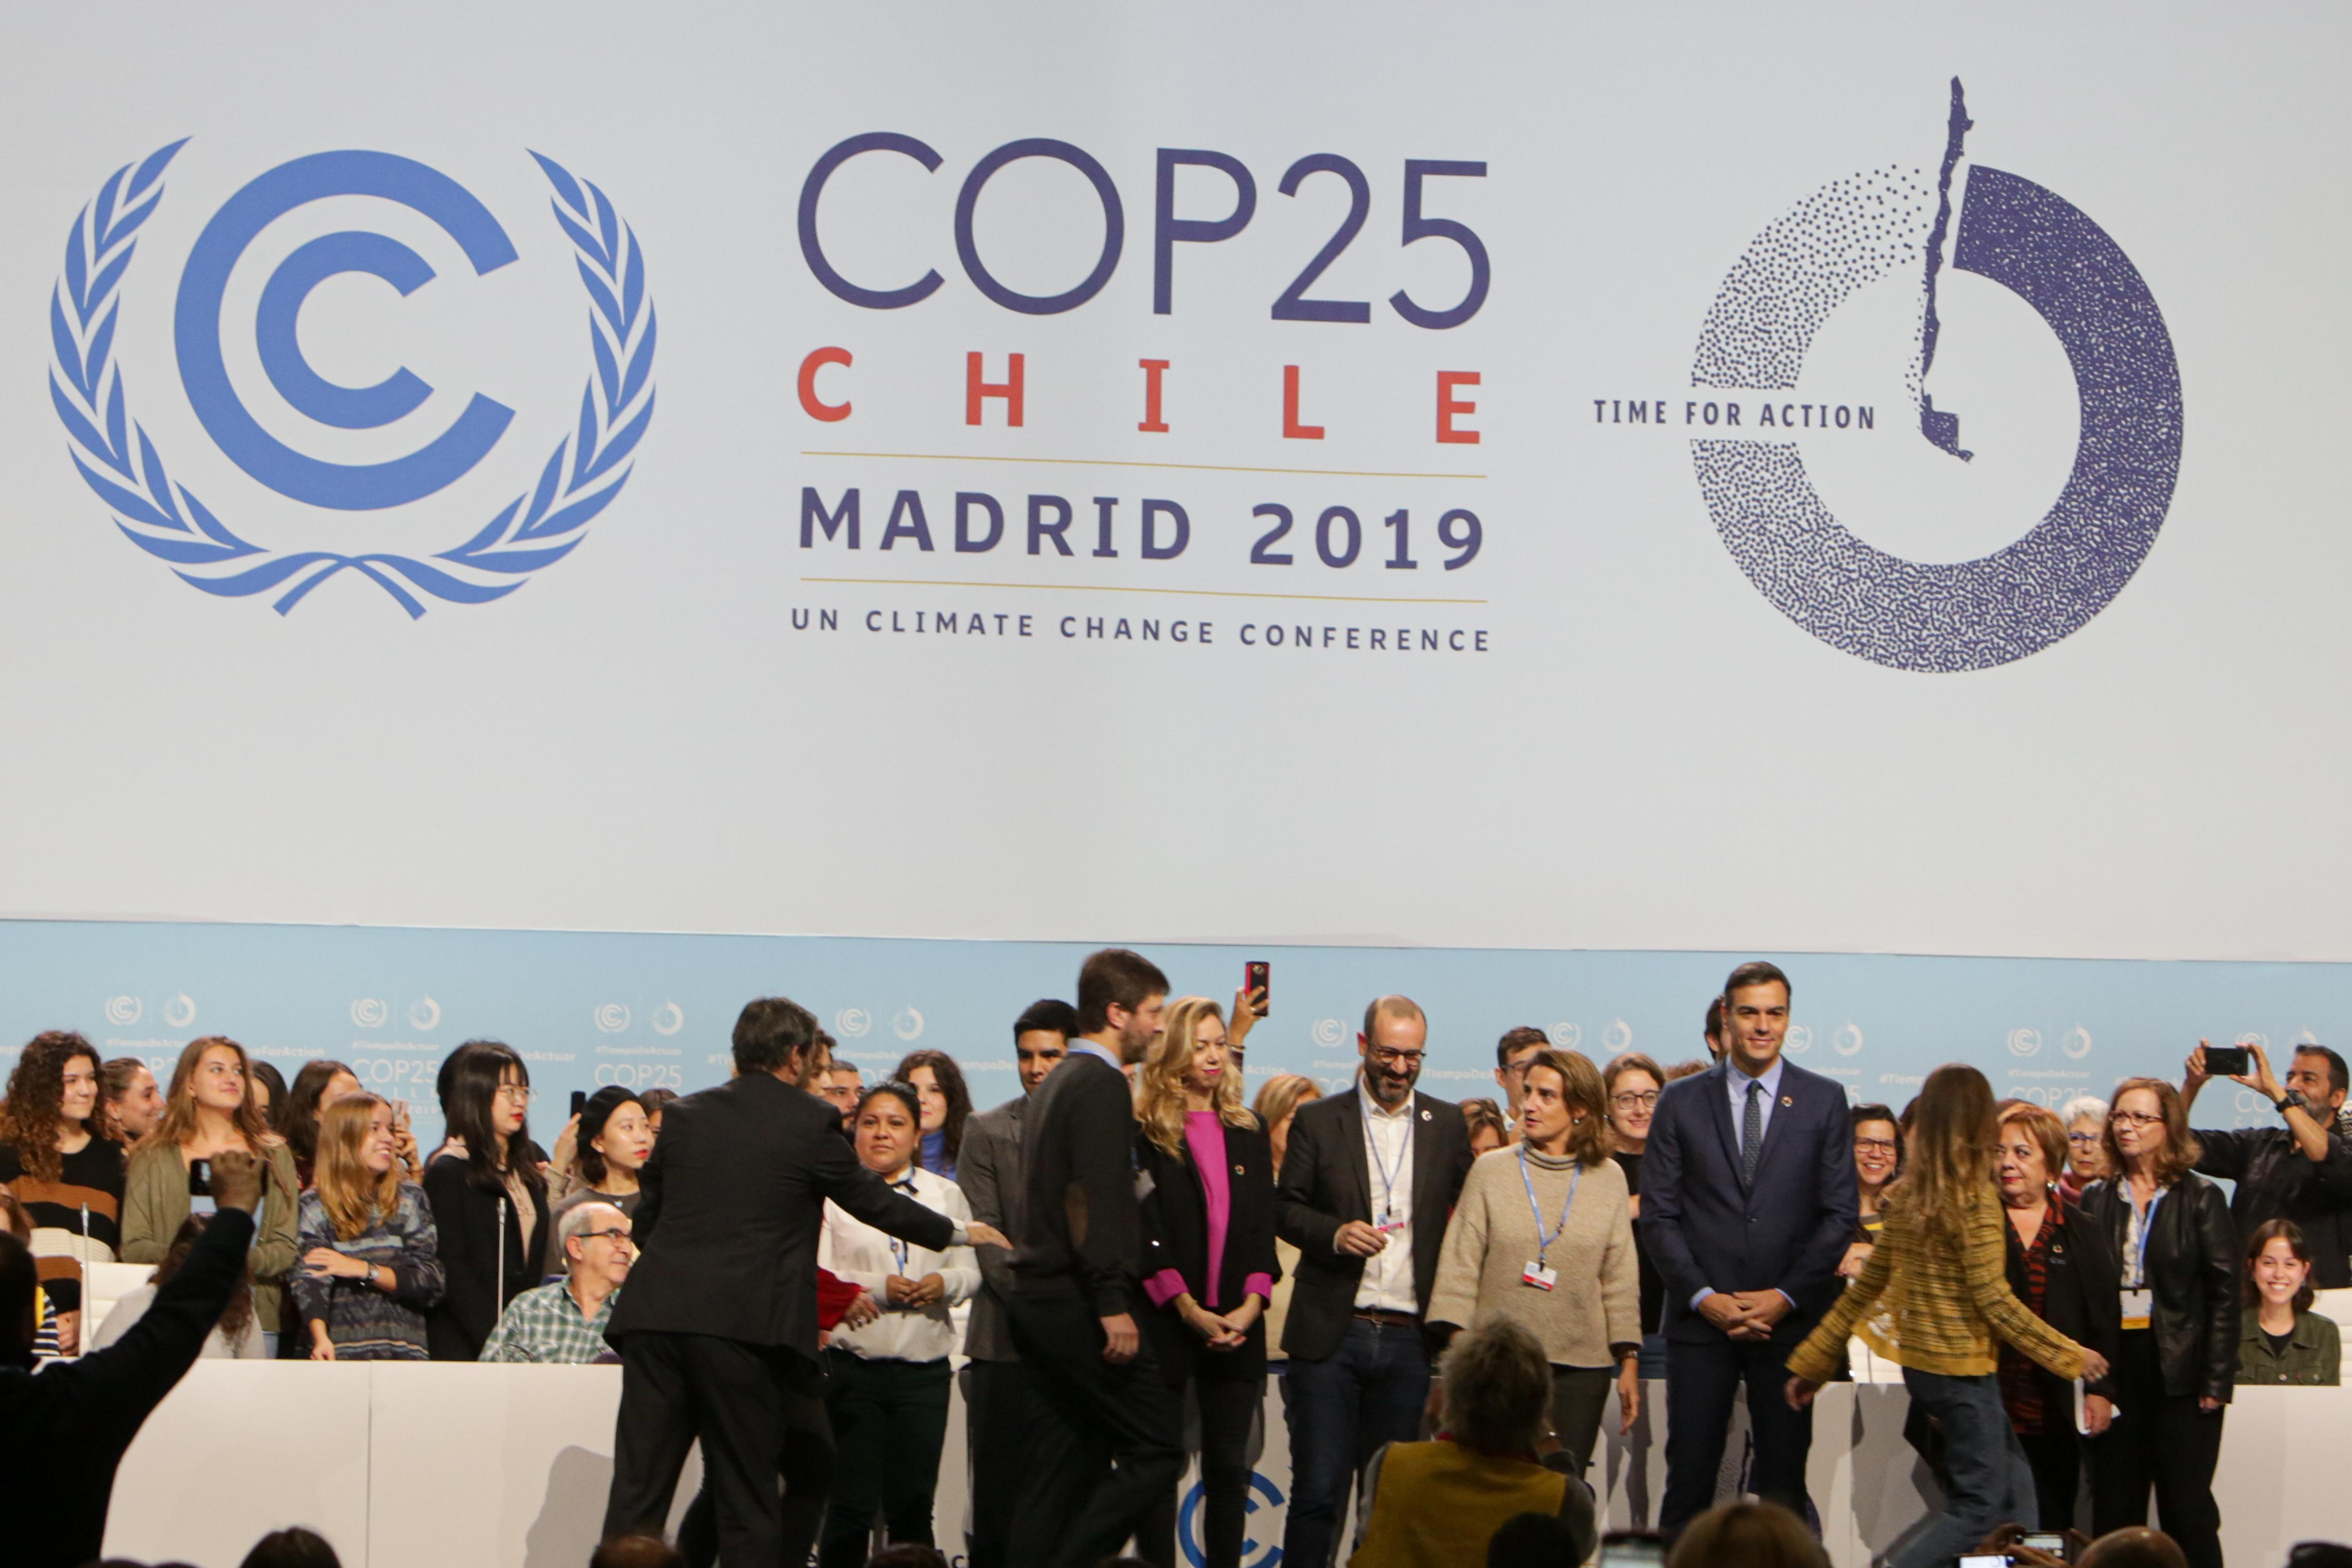 El presidente del Gobierno en funciones Pedro Sánchez acompañado de la ministra de Transición Ecológica en funciones Teresa Ribera visita las instalaciones que acogerán la próxima Cumbre del Clima